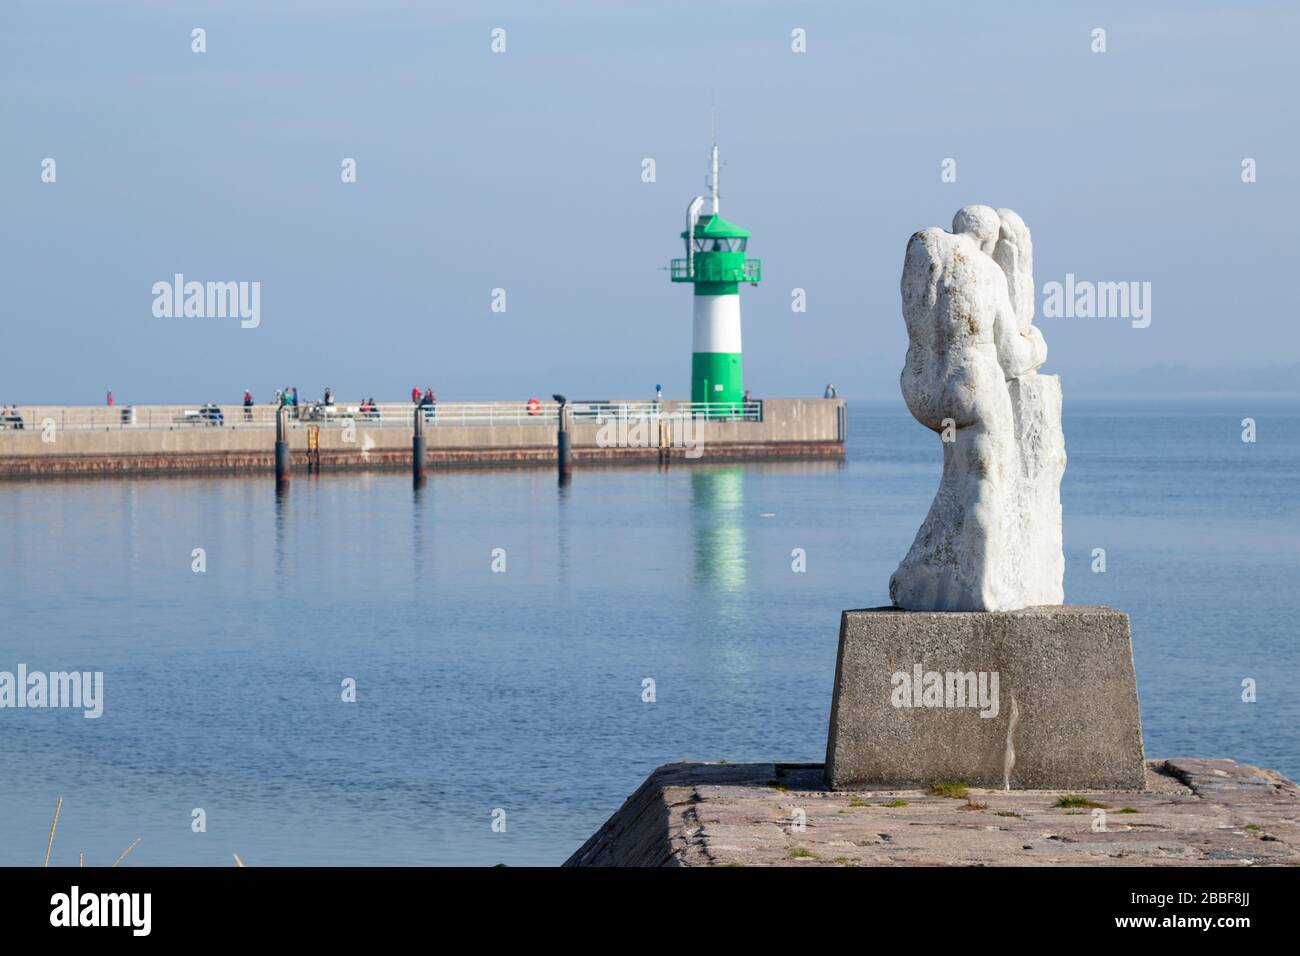 Lübeck-Travemünde, Deutschland - 10. Oktober 2018: Leuchtturm und Statue von Travemünde. Ein Touristenmagnet für Ostsee-Urlauber. Leuchtturm und Statue Stockfoto